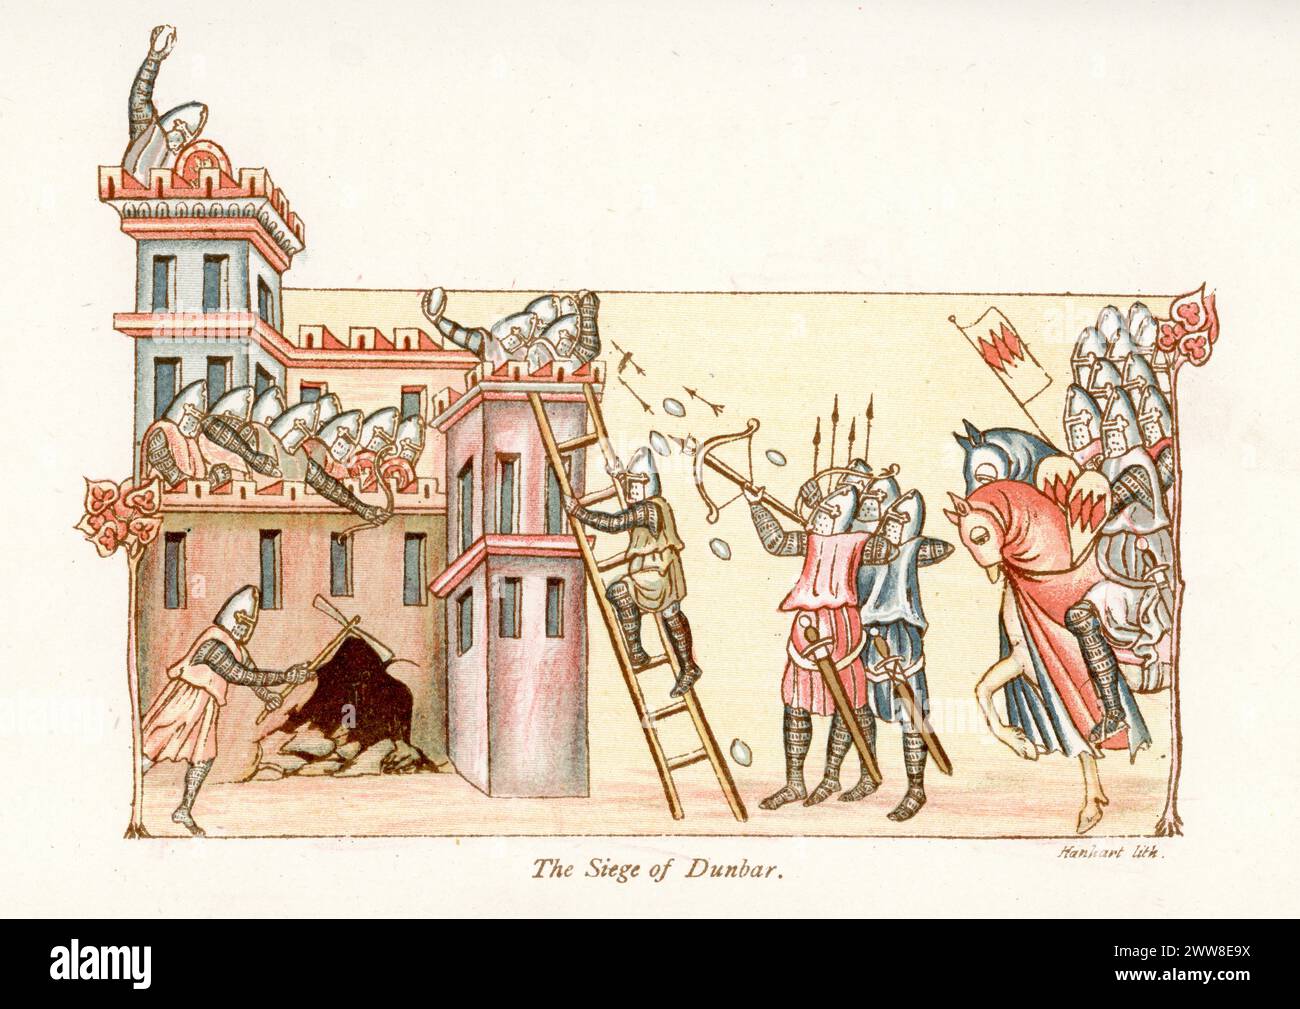 Litografia a colori vintage che mostra l'assedio di Dunbar, ebbe luogo durante il conflitto che sorse quando Edward Balliol, con il sostegno inglese, tentò di conquistare la corona scozzese a Davide II Foto Stock